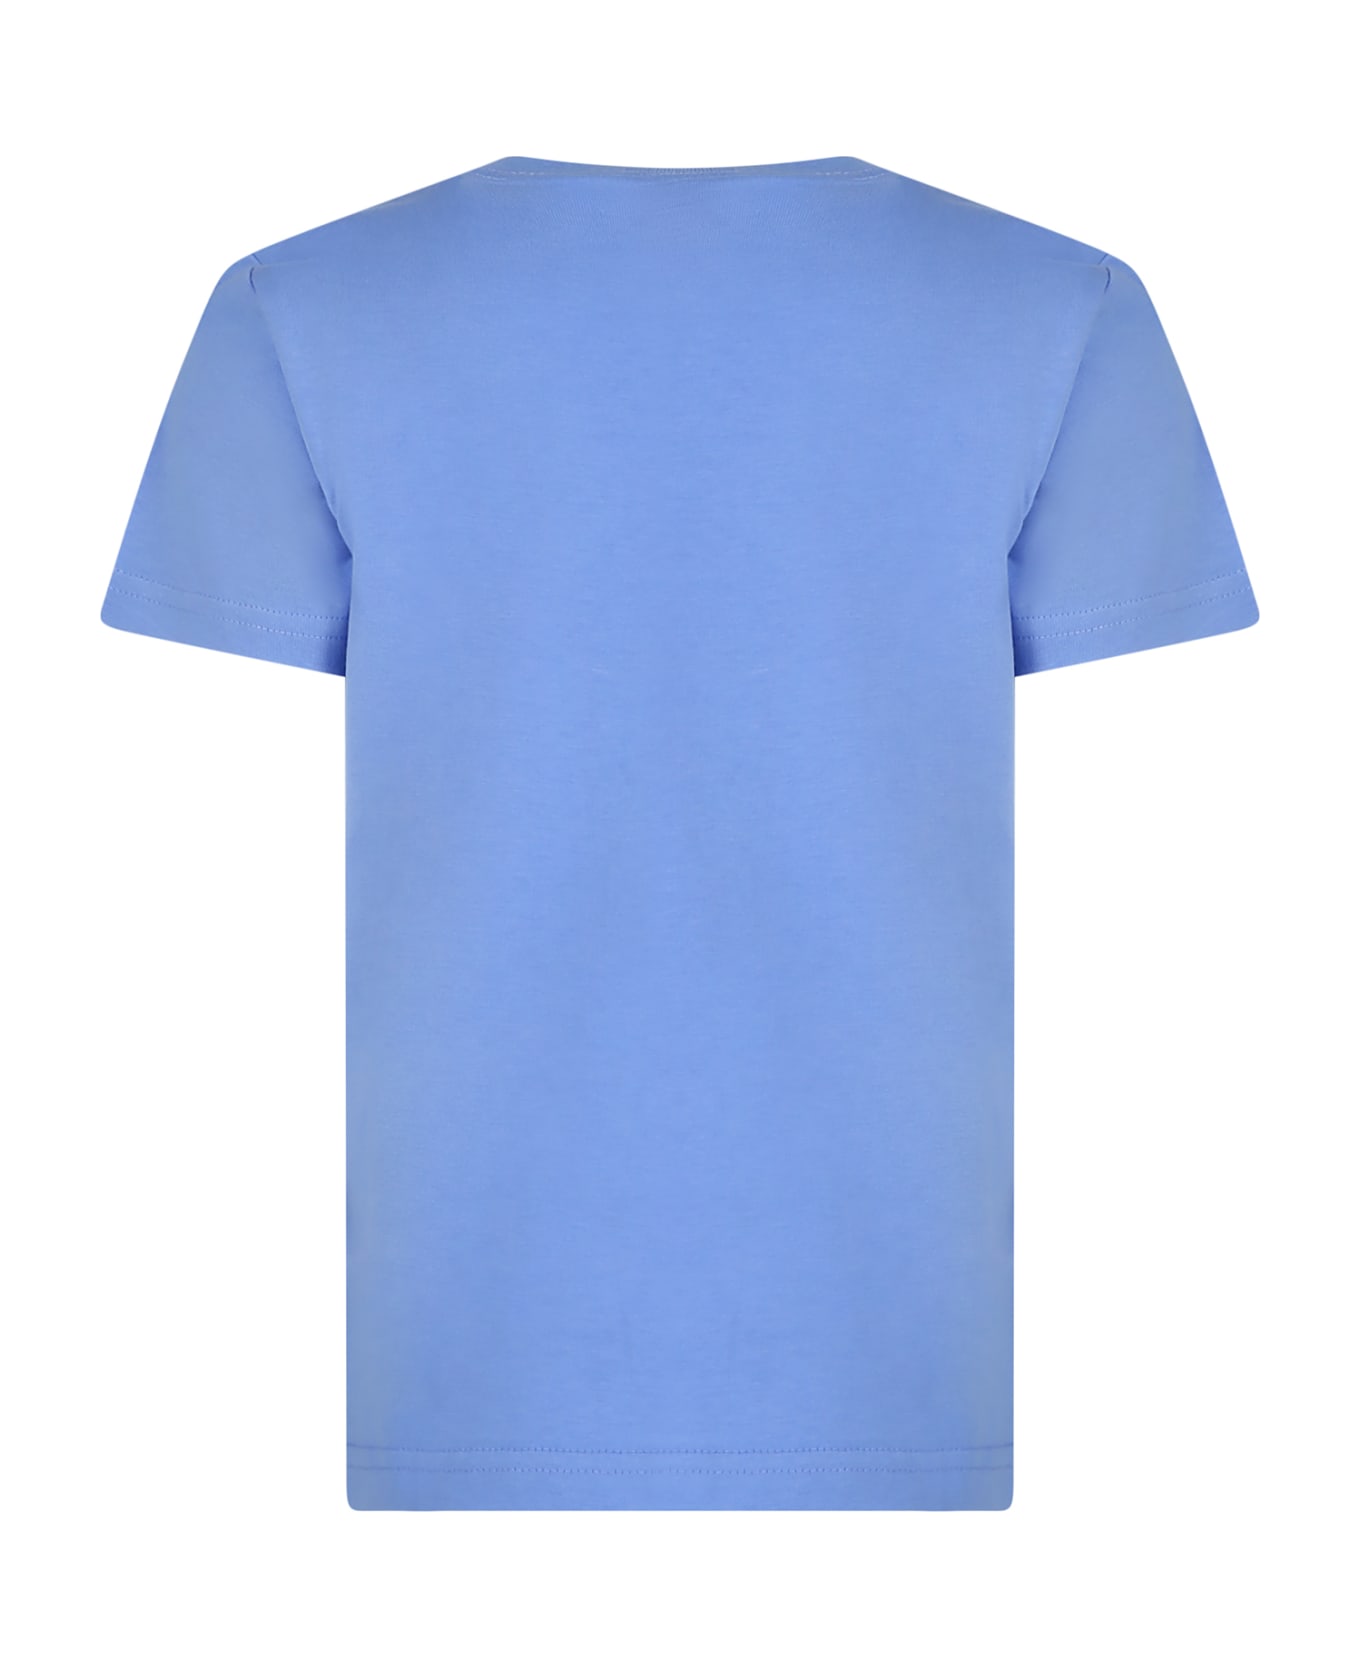 Ralph Lauren Light Blue T-shirt For Boy With Dog Print - Light Blue